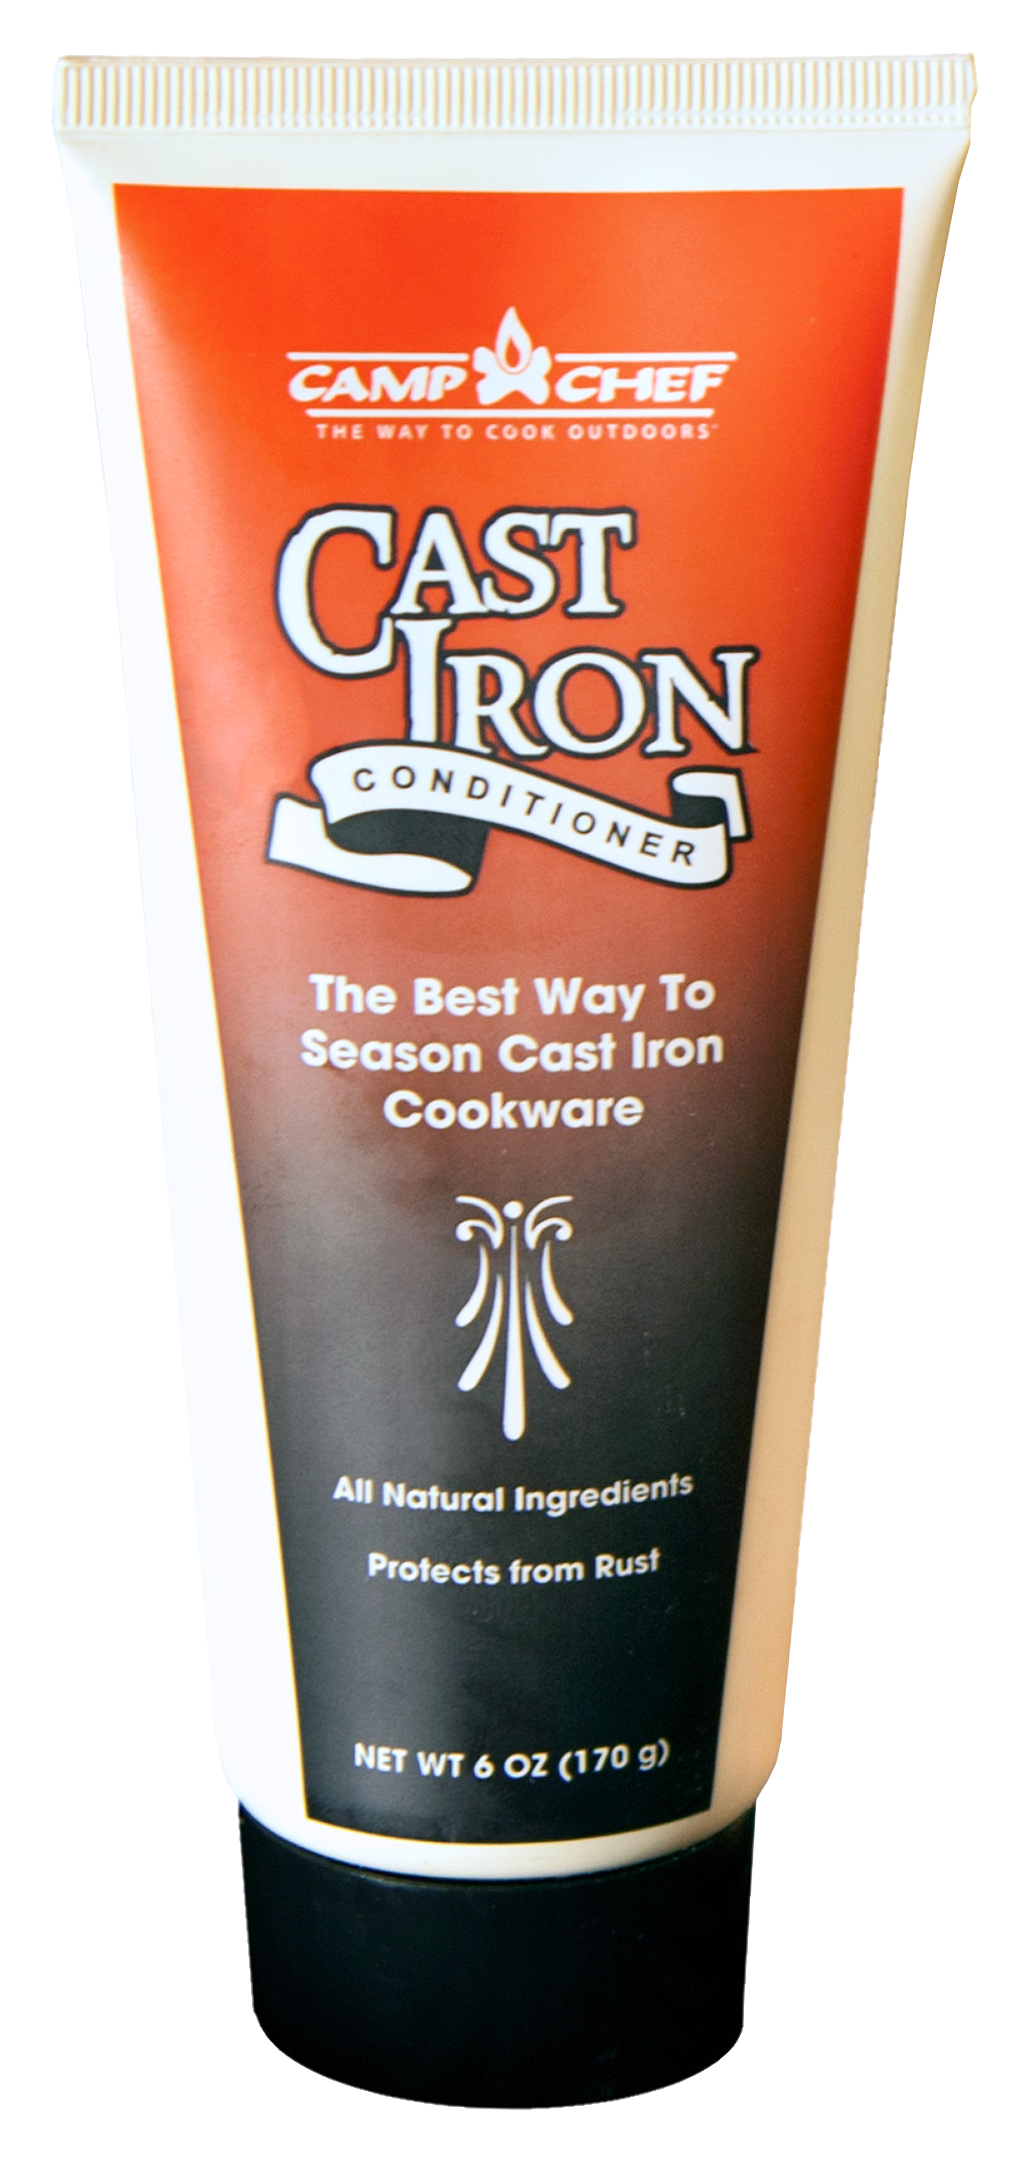 Camp Chef 8 oz. Spray Premium Cast Iron Conditioner